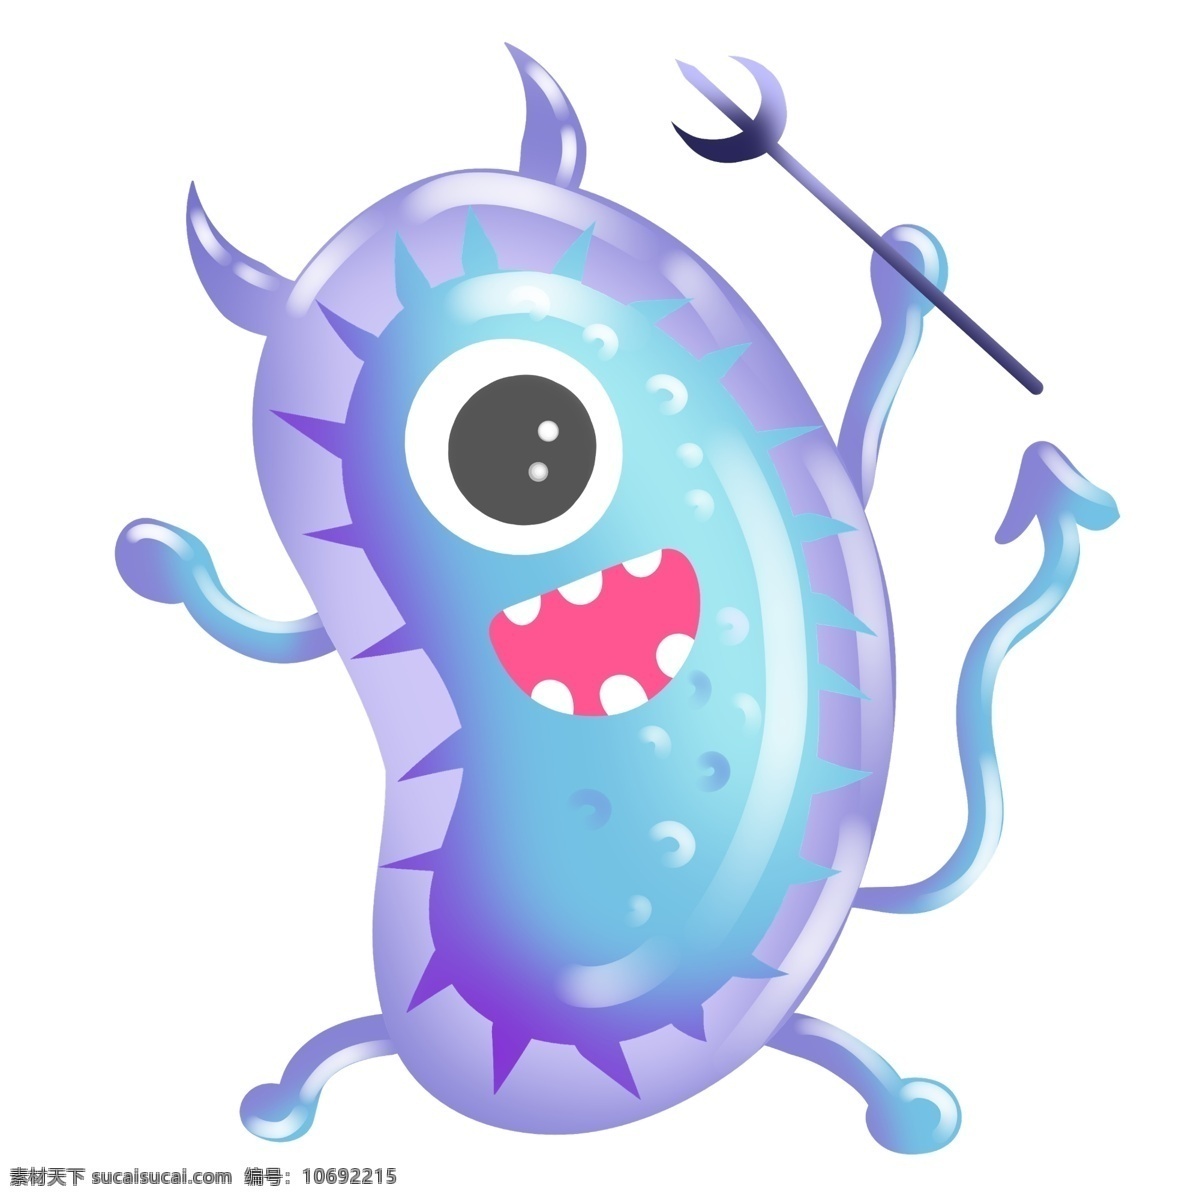 立体 细菌 装饰 插画 蓝色的细菌 立体细菌 病毒细菌 漂亮的细菌 创意细菌 卡通细菌 精美细菌